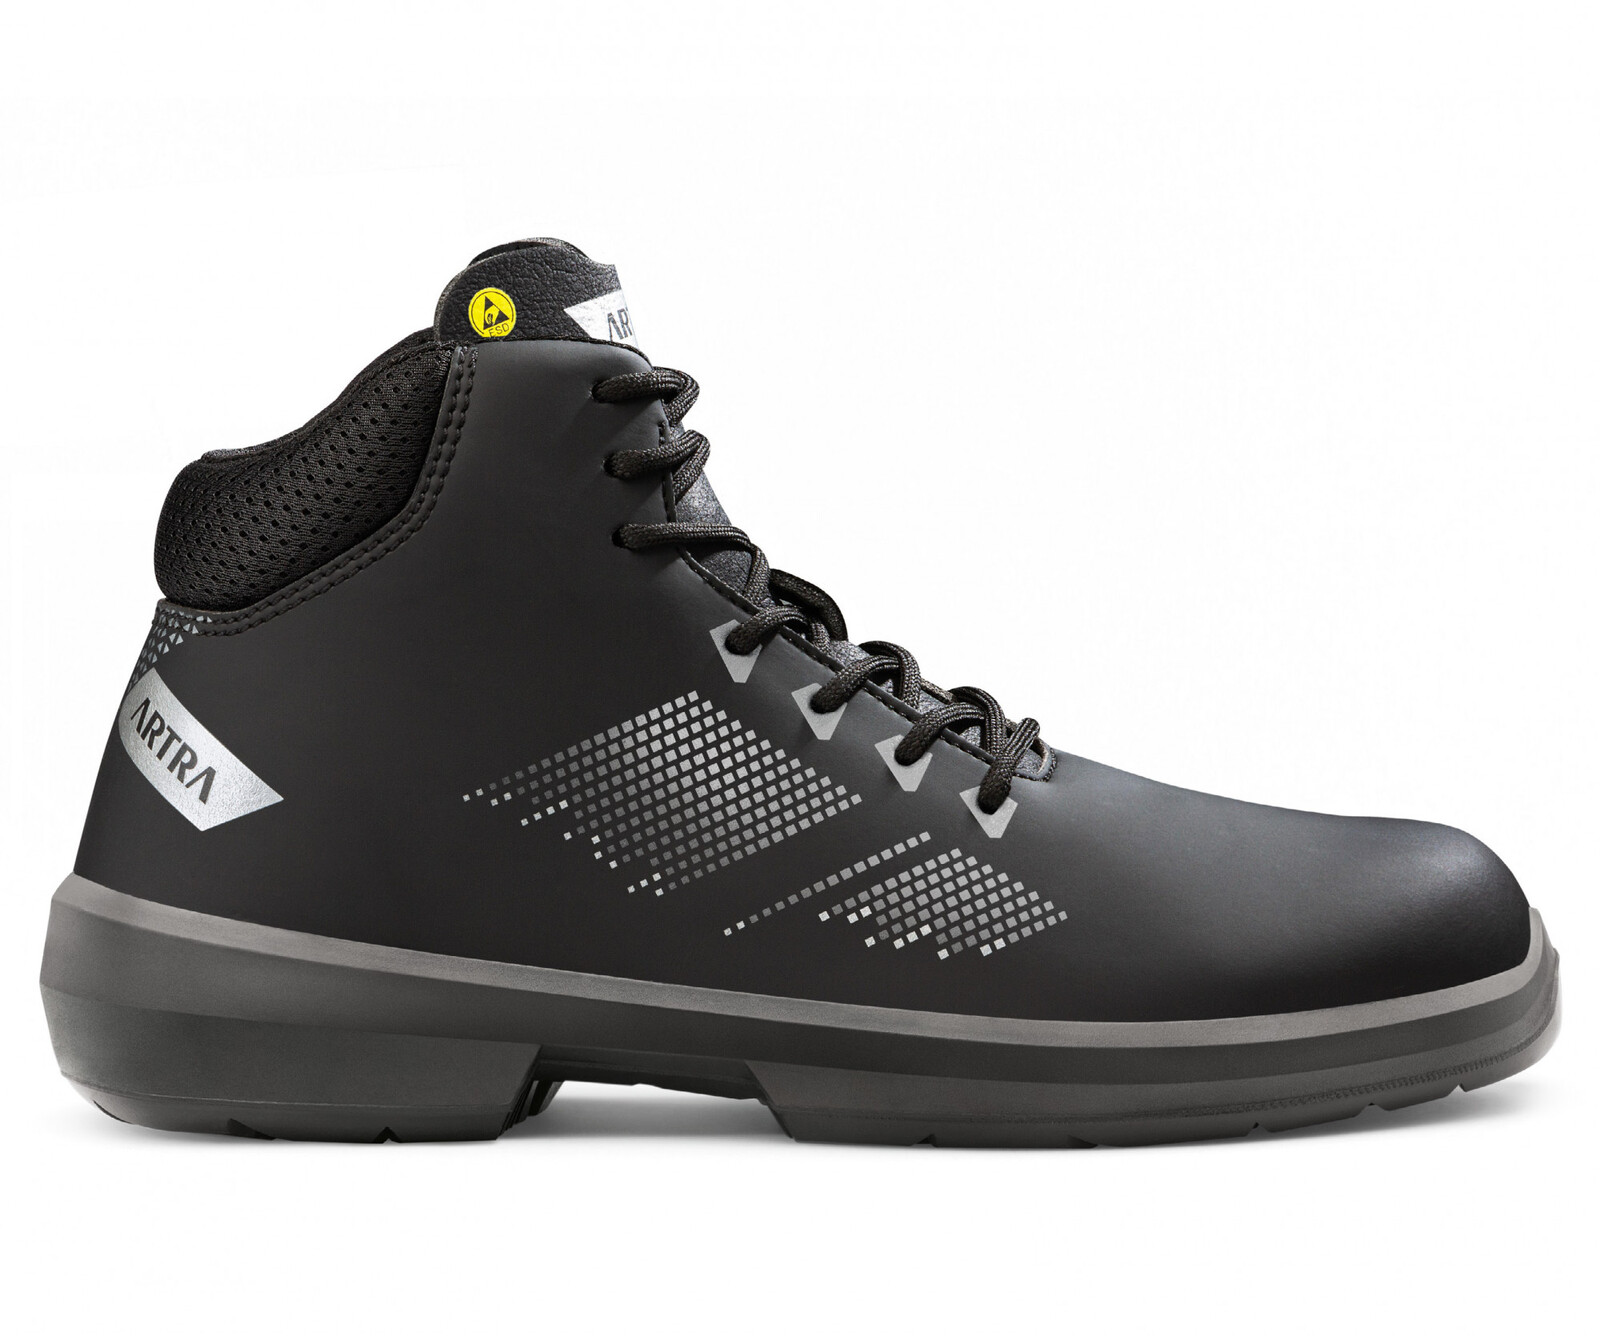 Bezpečnostná členková obuv Artra Arrival 855 676560 S3 SRC ESD MF - veľkosť: 45, farba: čierna/sivá